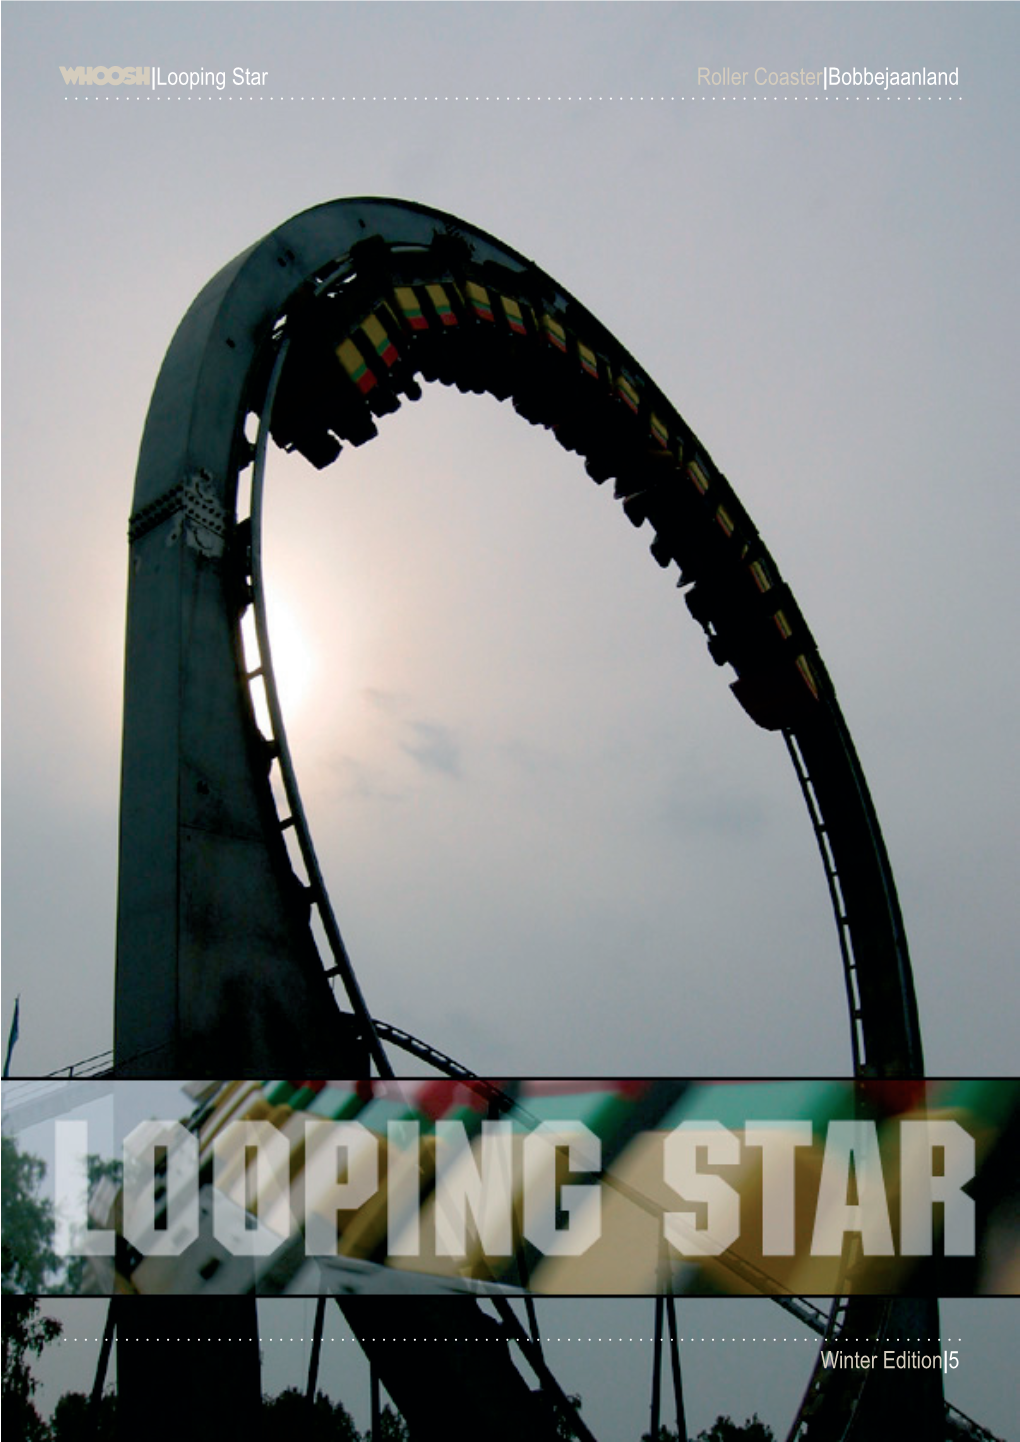 Looping Star Roller Coaster|Bobbejaanland